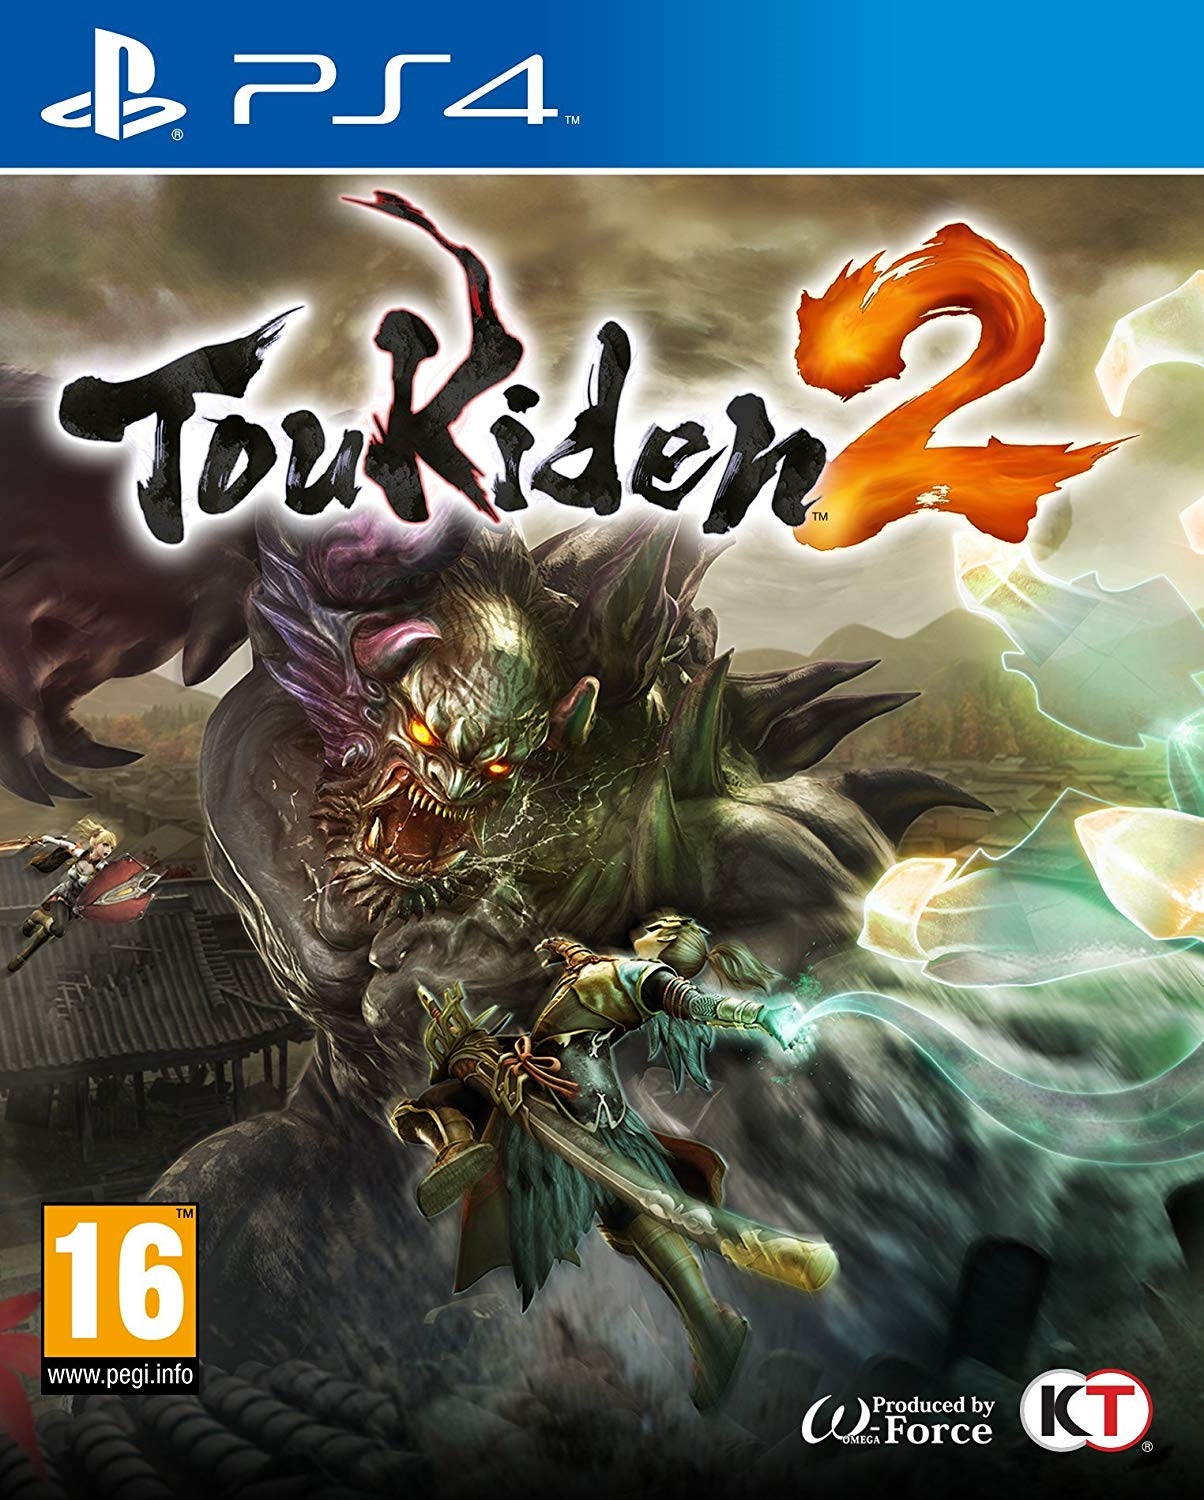 Игра Toukiden 2 для PlayStation 4